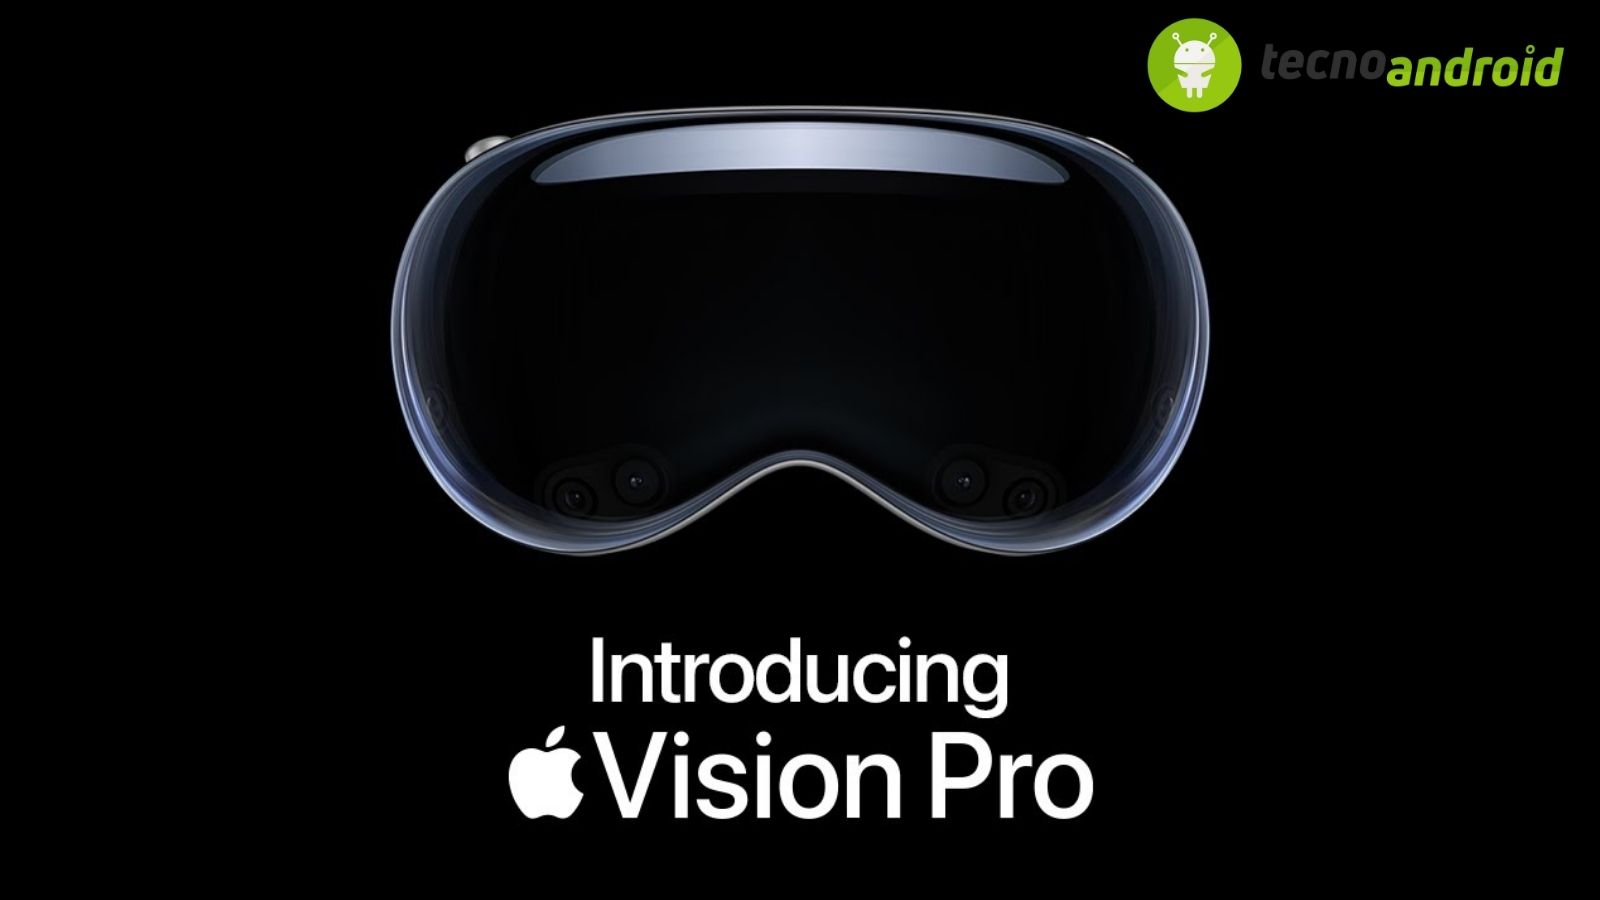  Vision Pro Apple: svelato visore attraverso uno spot stupefacente